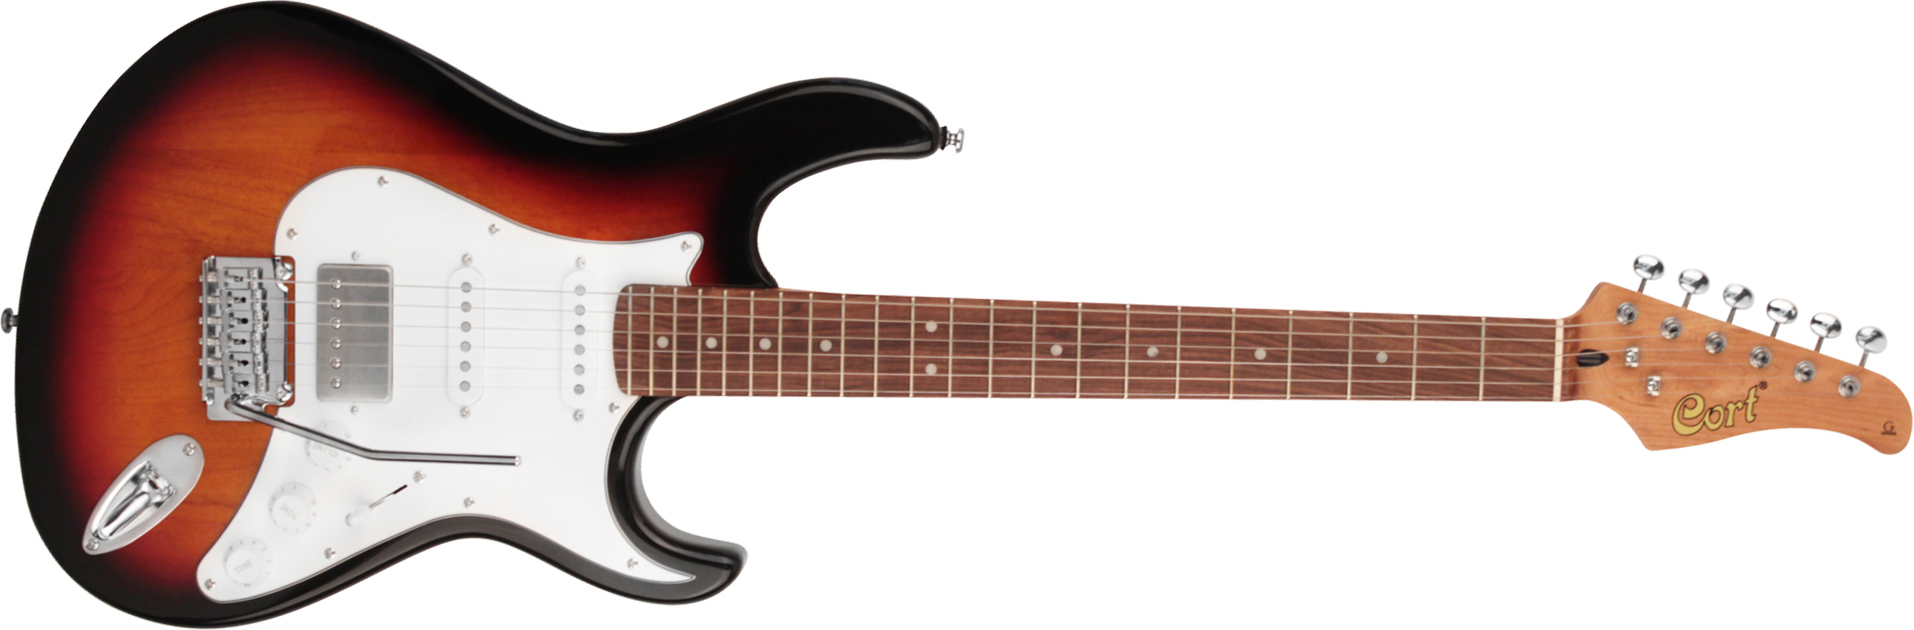 Cort G260cs Hss Trem Pau - 3 Tone Sunburst - Str shape electric guitar - Main picture